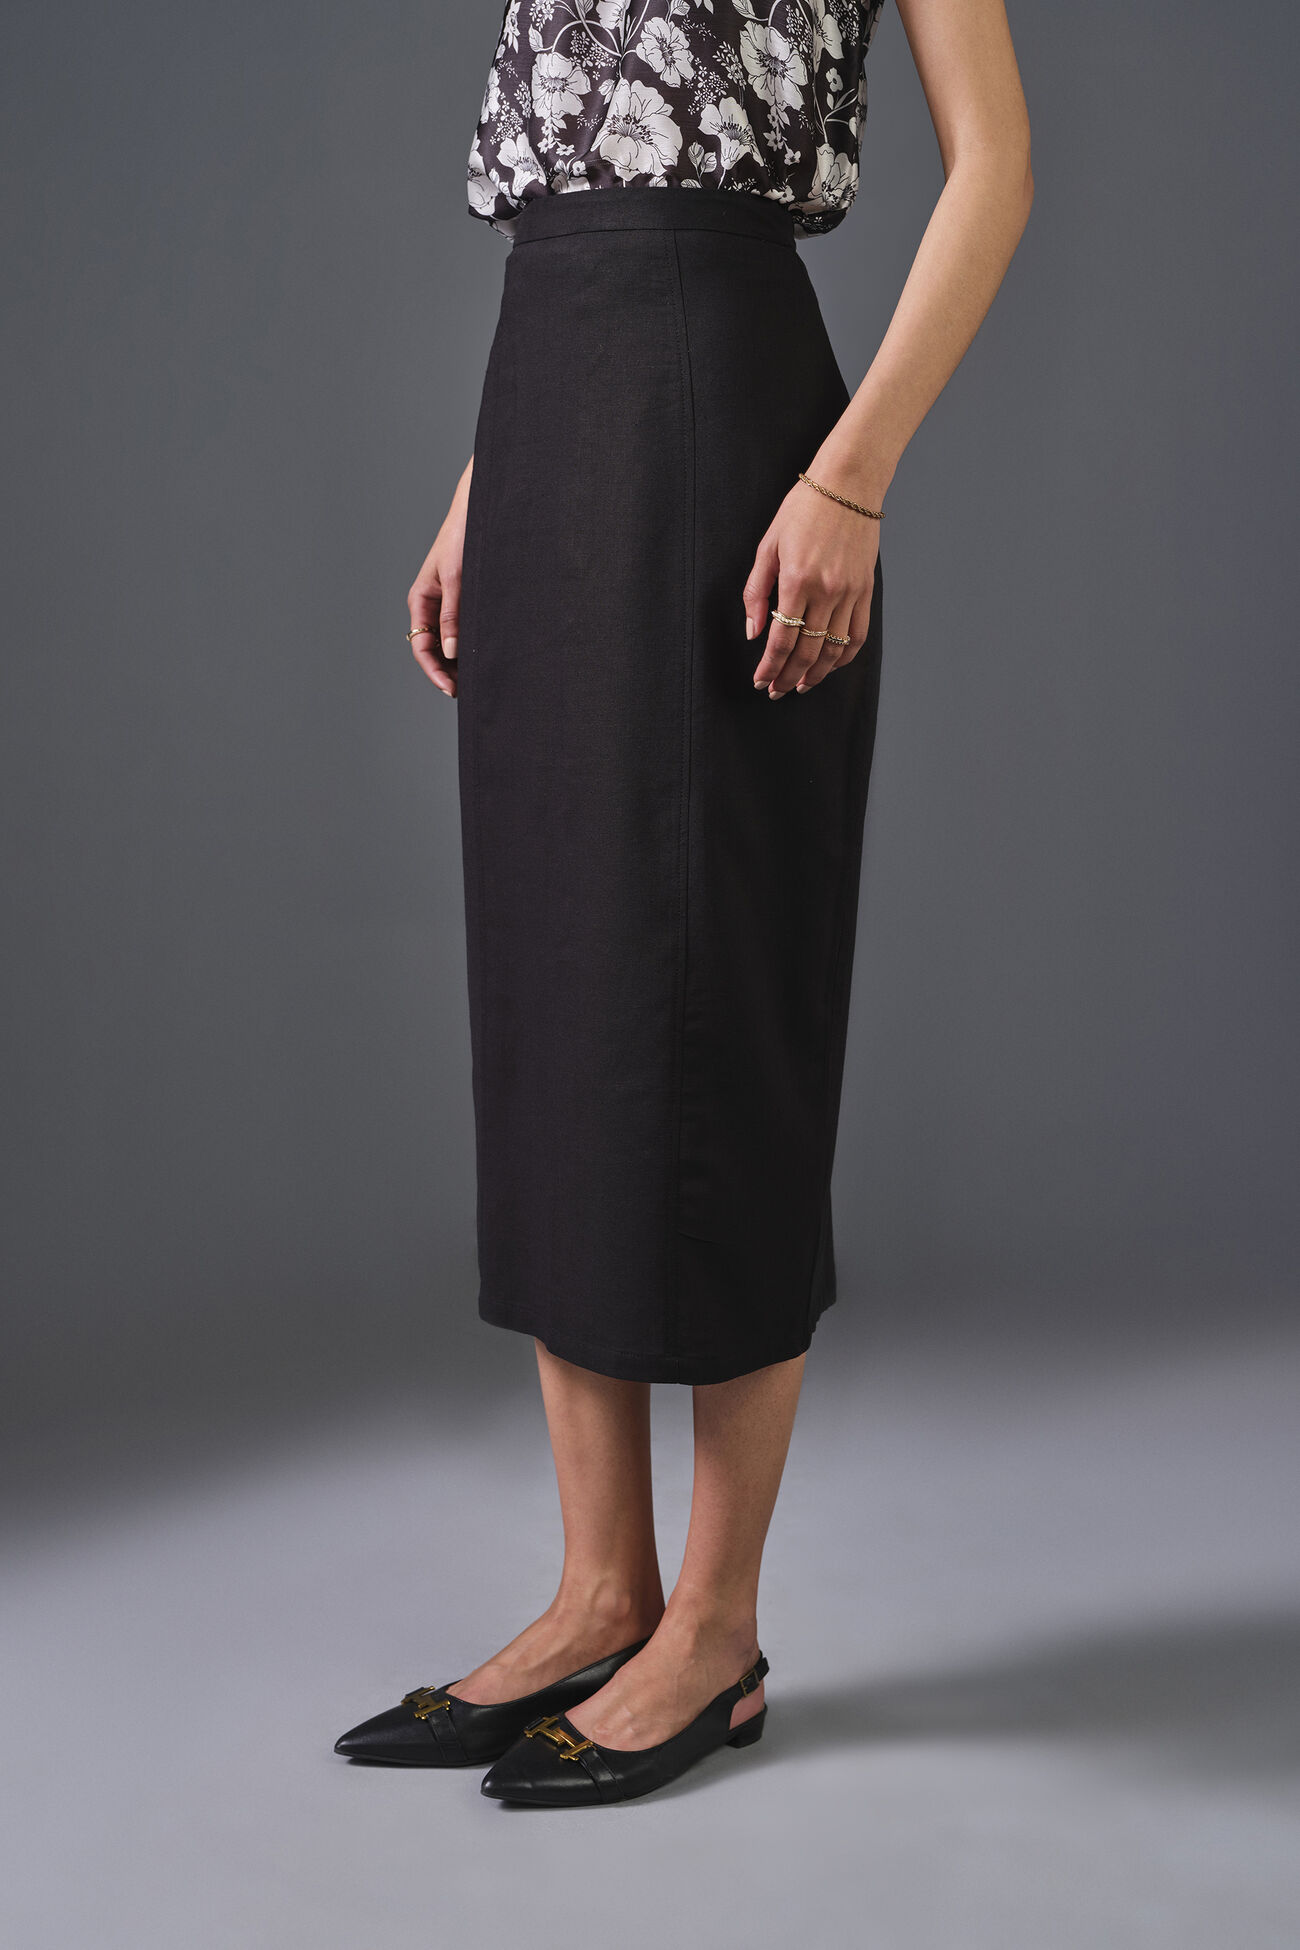 Ebony Elegance Viscose Skirt, Black, image 4